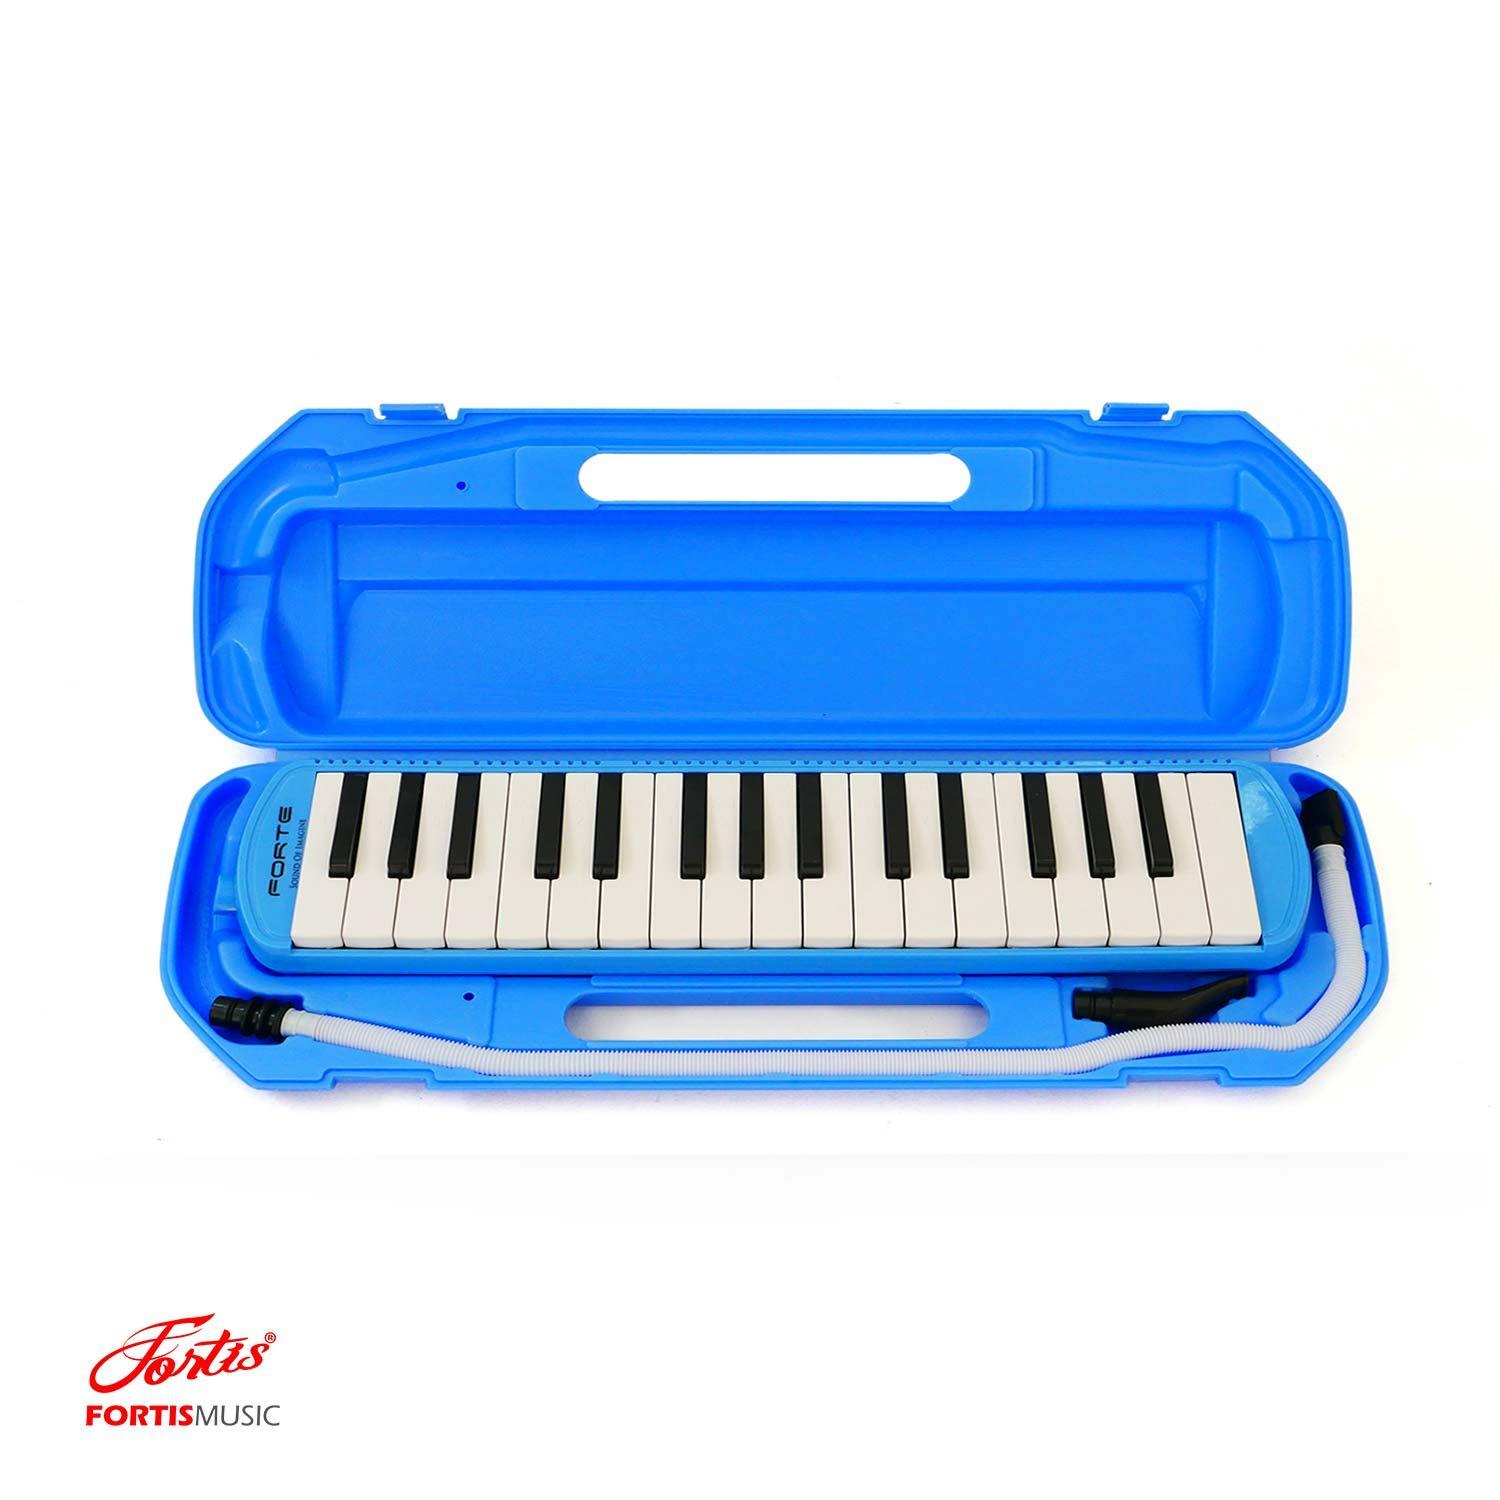 เมโลเดียน Forte 32 คีย์ มาตรฐาน (สีน้ำเงิน) Melodica 32 Keys FORTE Melodica (Blue)